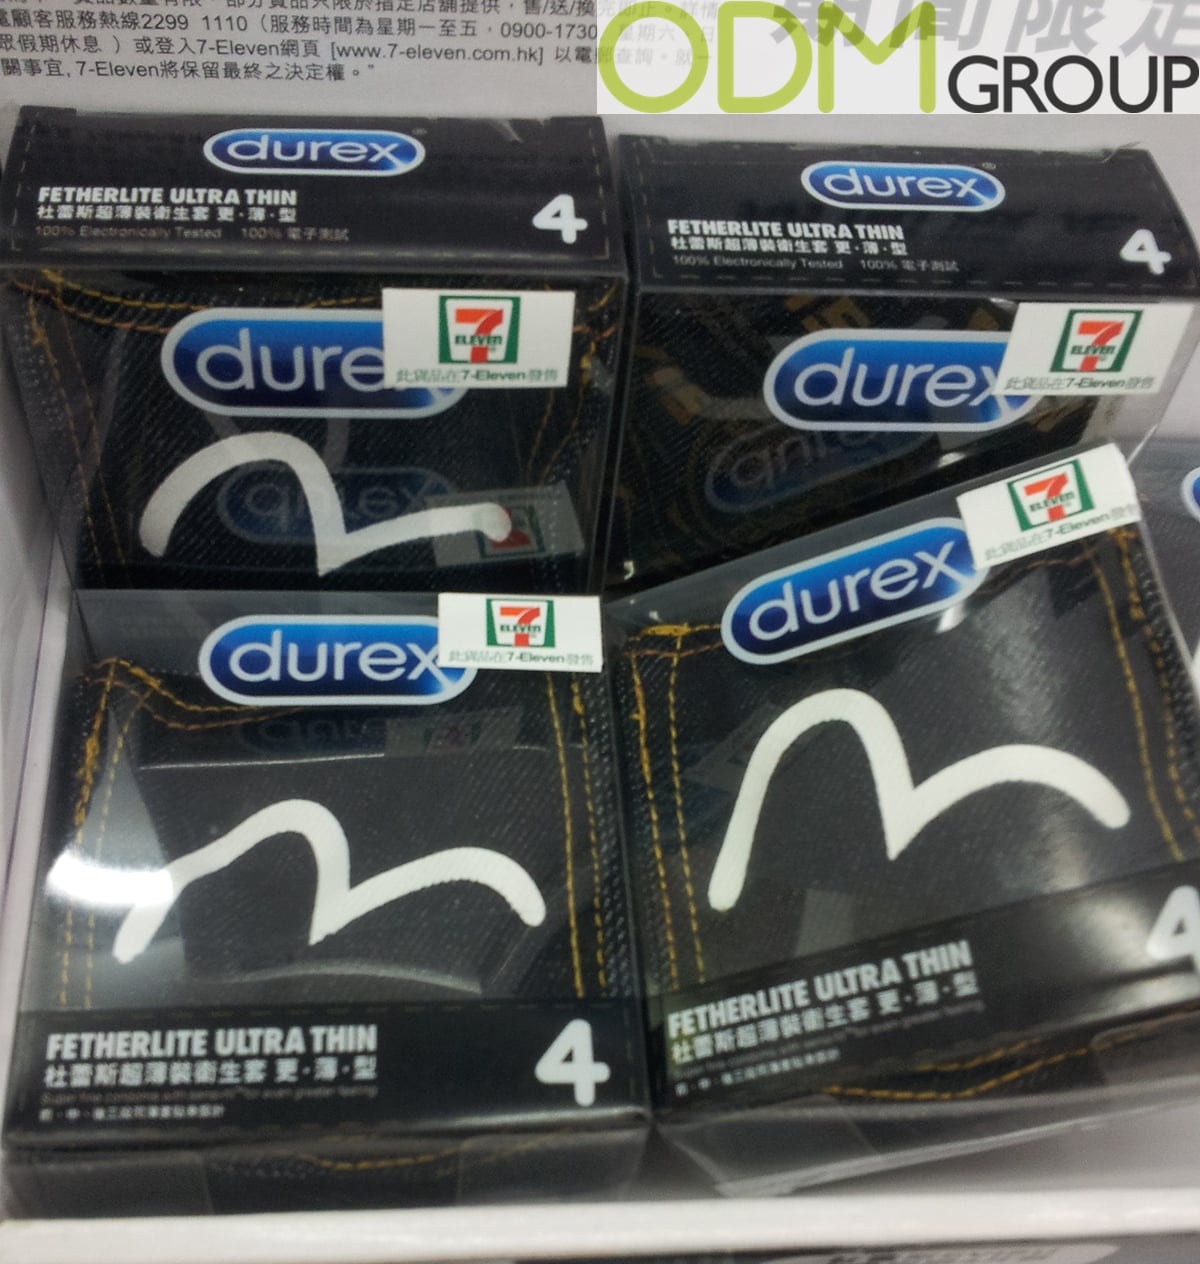 On Pack Promotion - Durex Custom Packaging